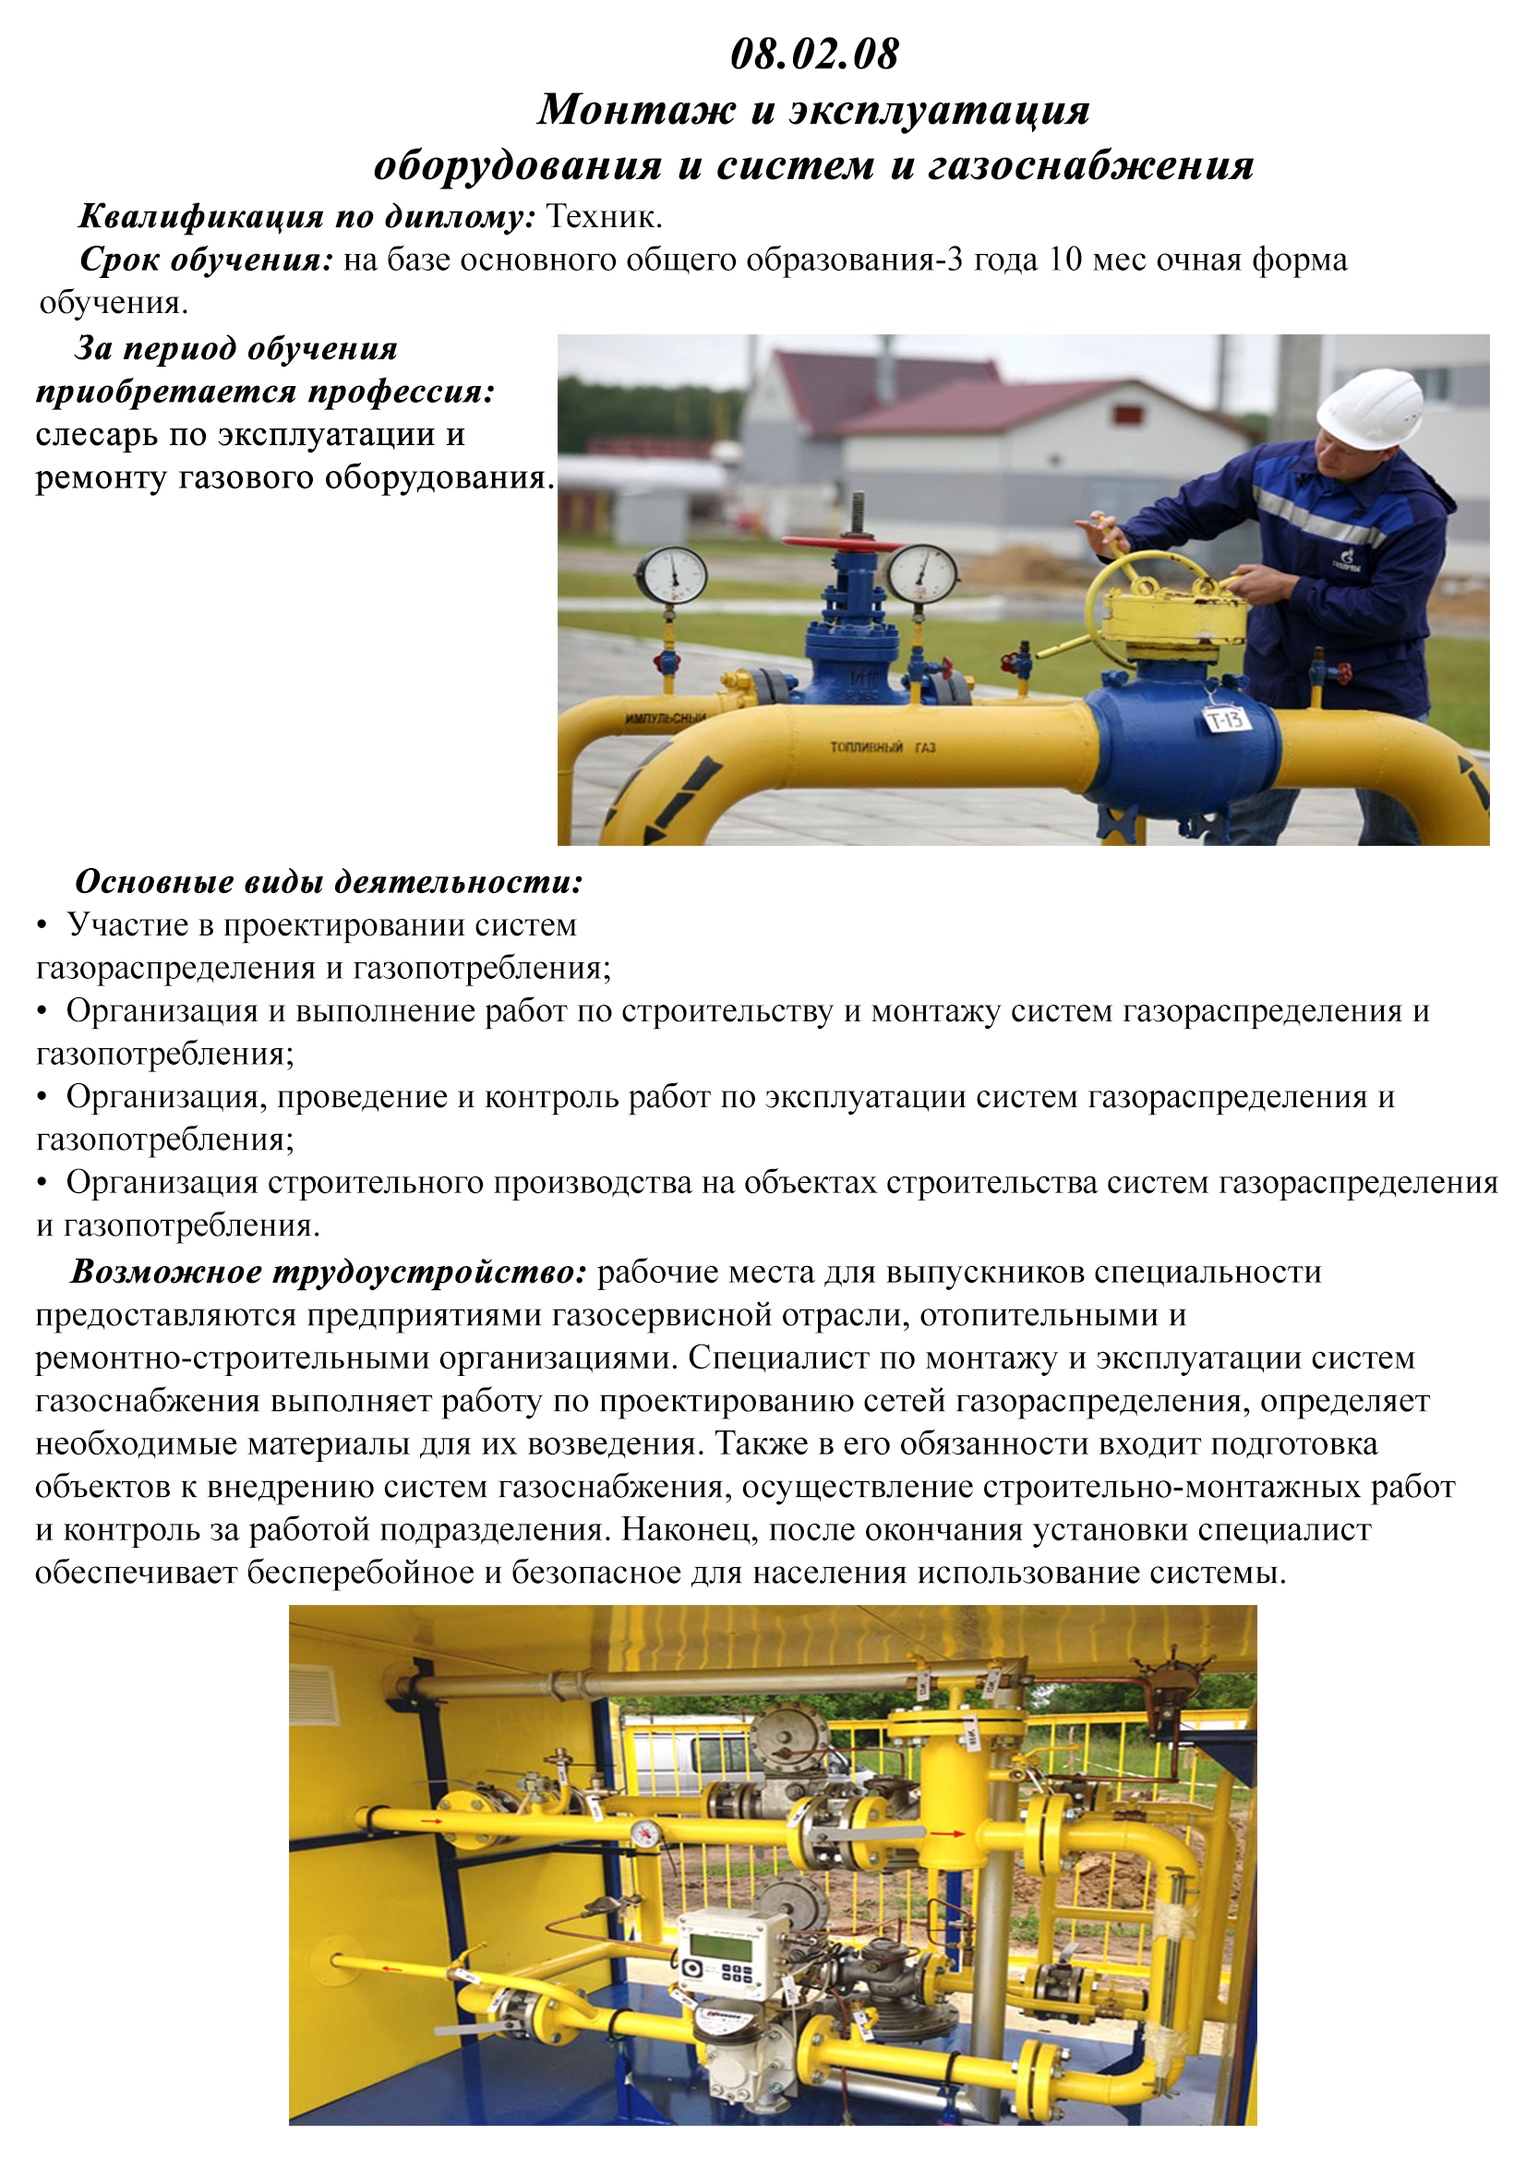 Монтаж и эксплуатация оборудования и систем газоснабжения